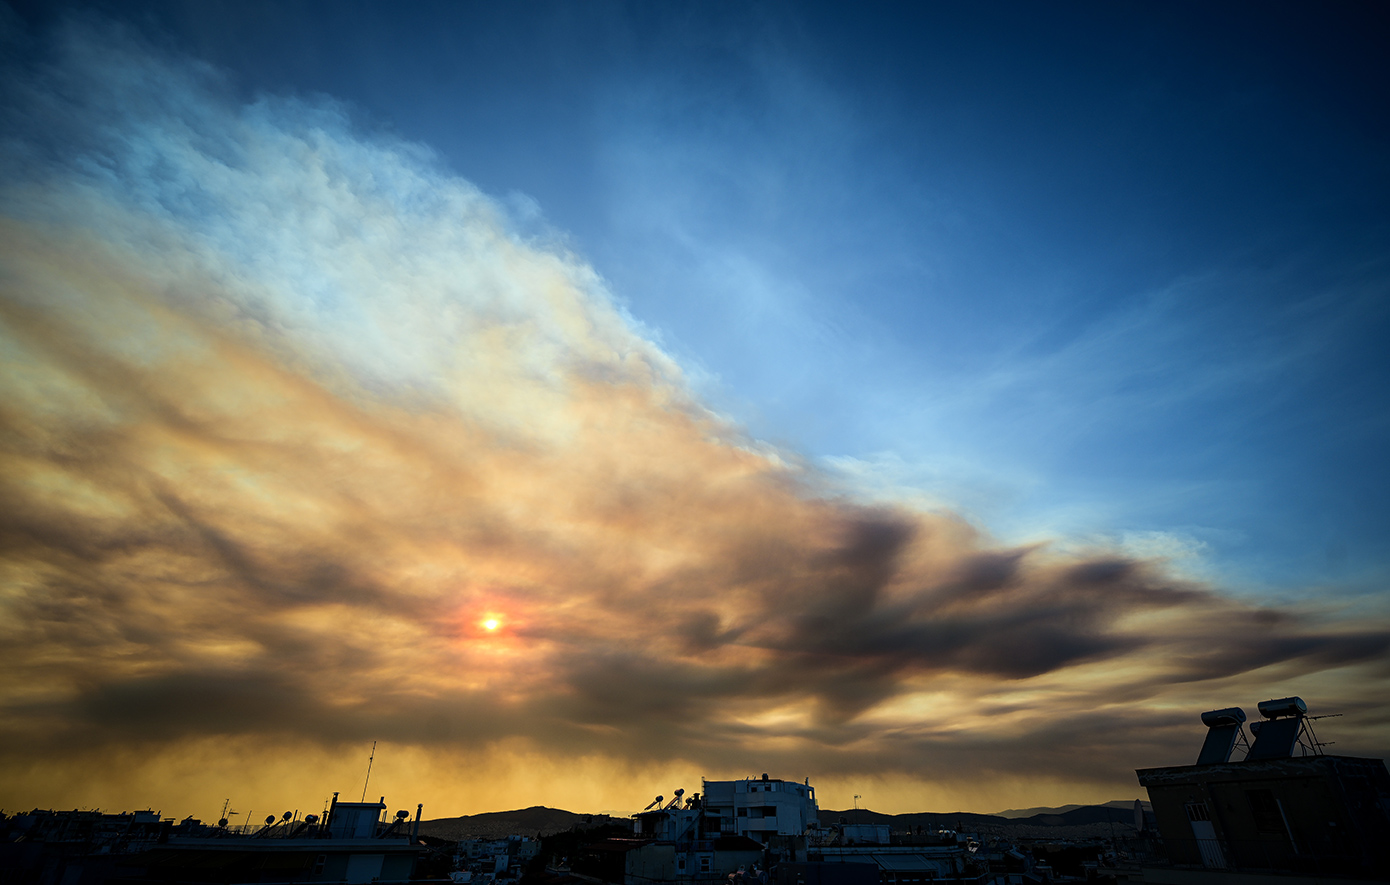 Ο μαύρος καπνός από τις φωτιές στην Εύβοια σκέπασε τον ουρανό της Αττικής – Γιγατόνοι άνθρακα ελκύονται στην ατμόσφαιρα